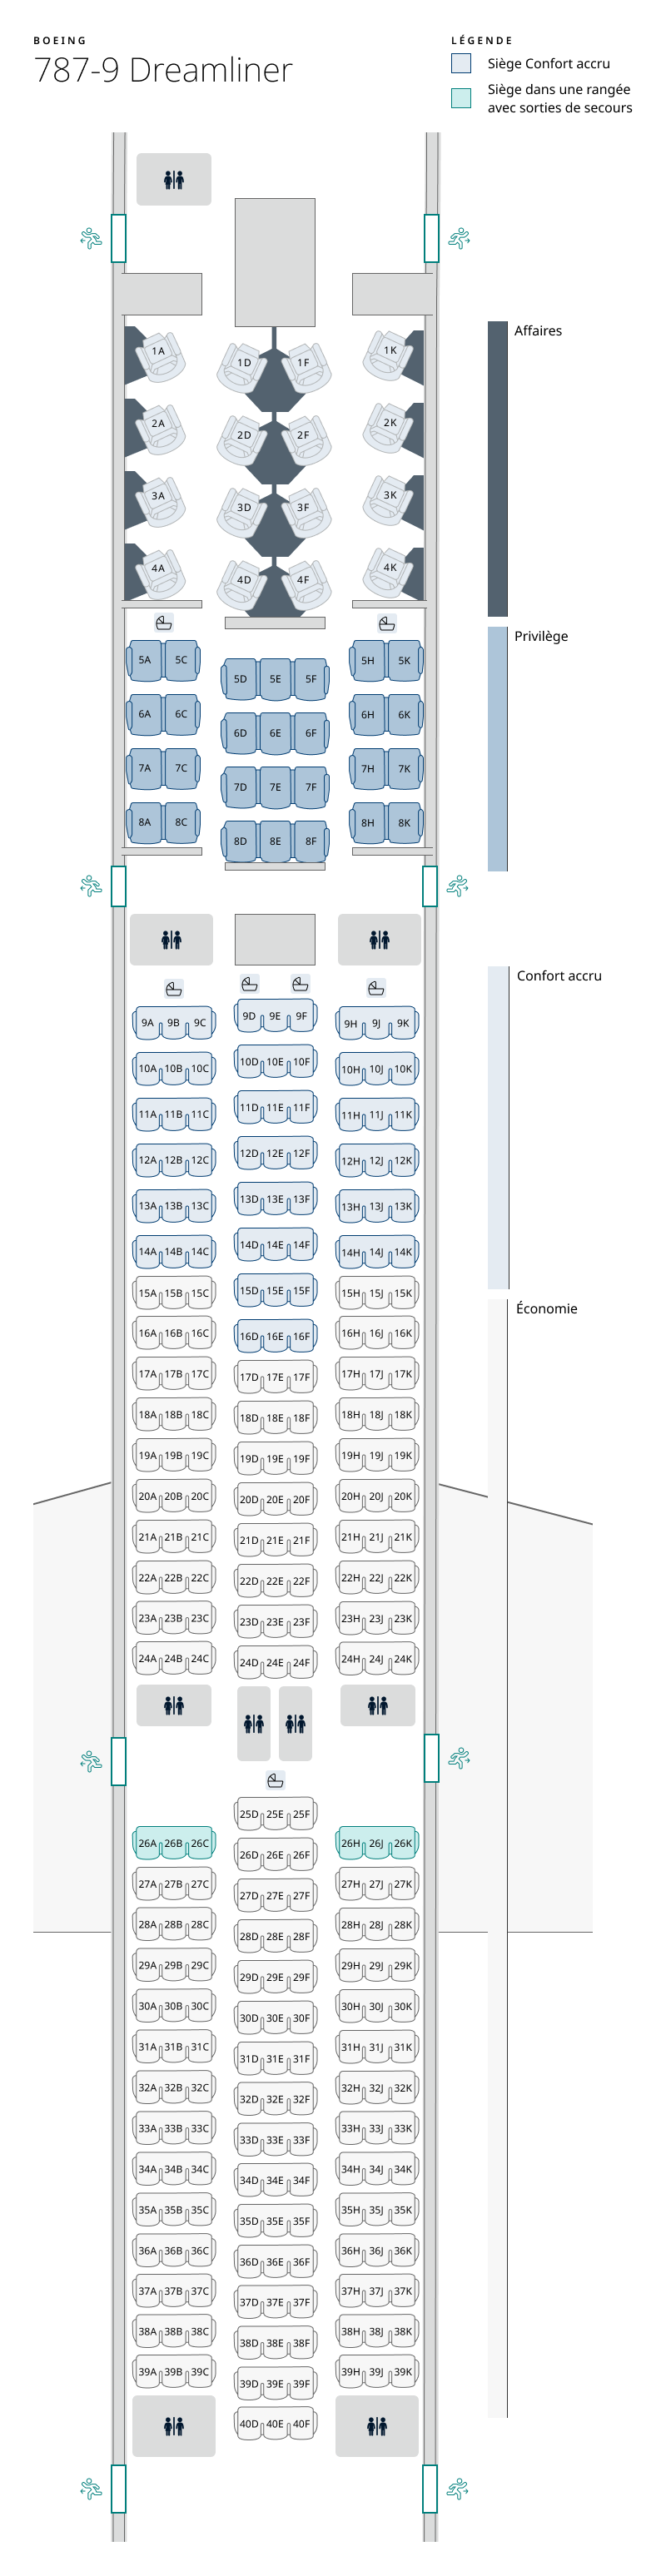 Plan de cabine de l’appareil 787-9 Dreamliner. Les renseignements sur les sièges sont disponibles dans le tableau ci-dessous :